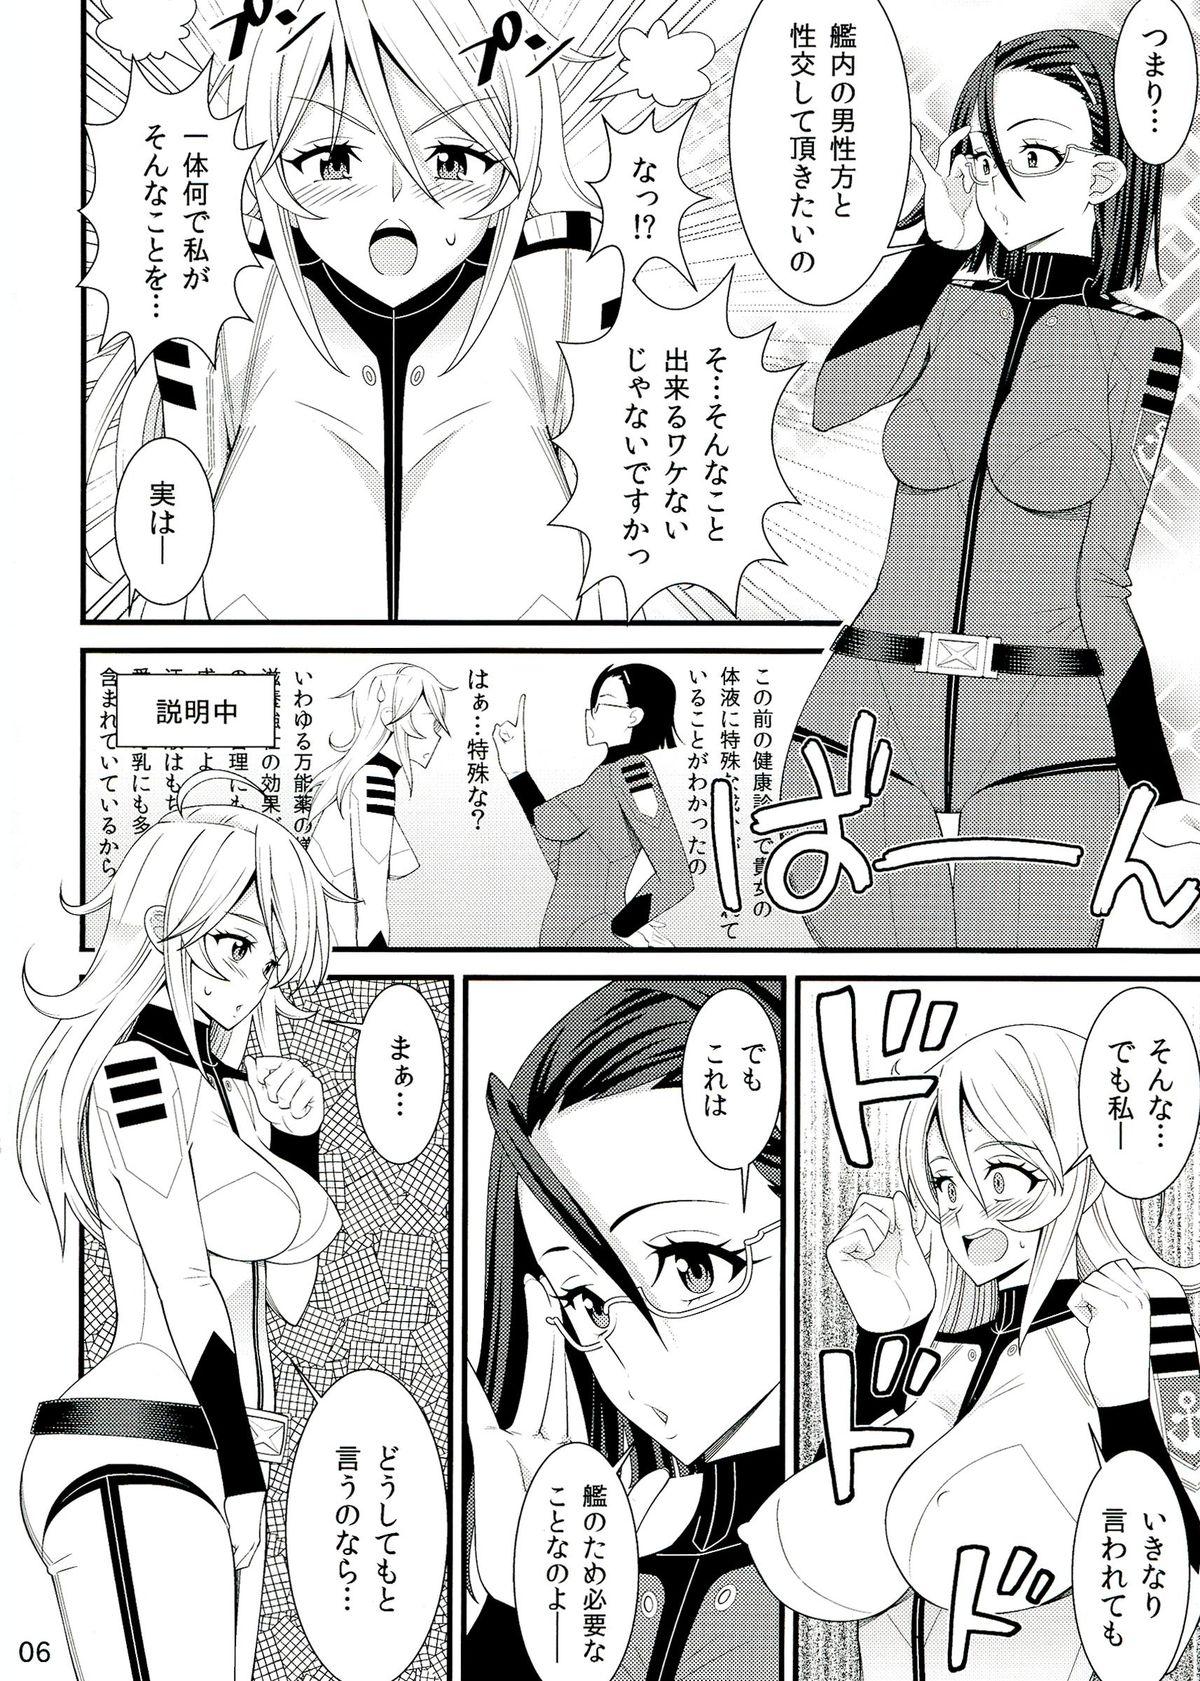 Blowing Yamato Nadeshiko - Space battleship yamato Futa - Page 6